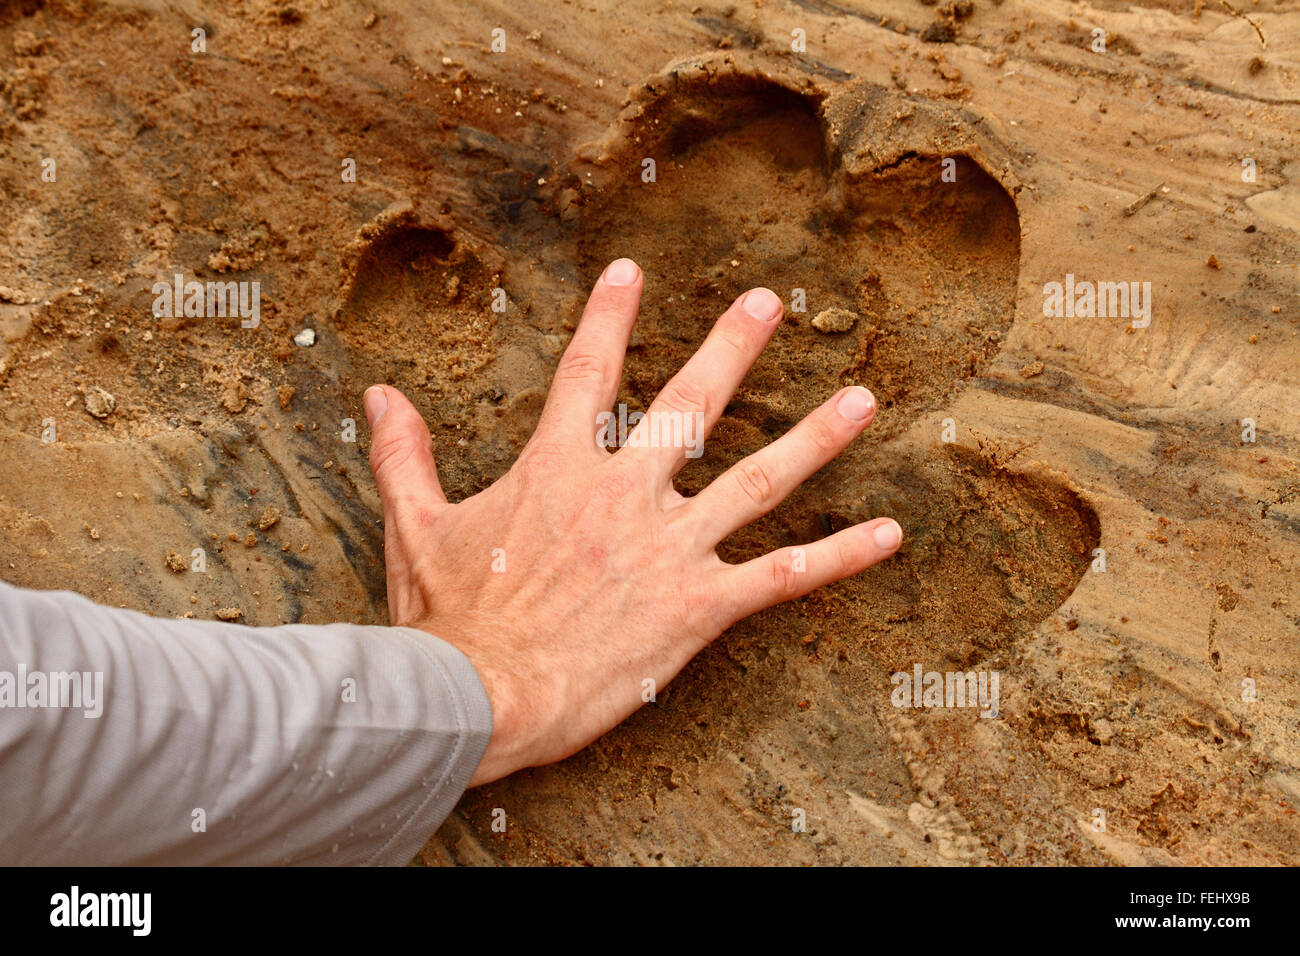 Ein Mann legt seine Hand in ein Nilpferd Fuß Drucken der Größenvergleich zu zeigen. Stockfoto